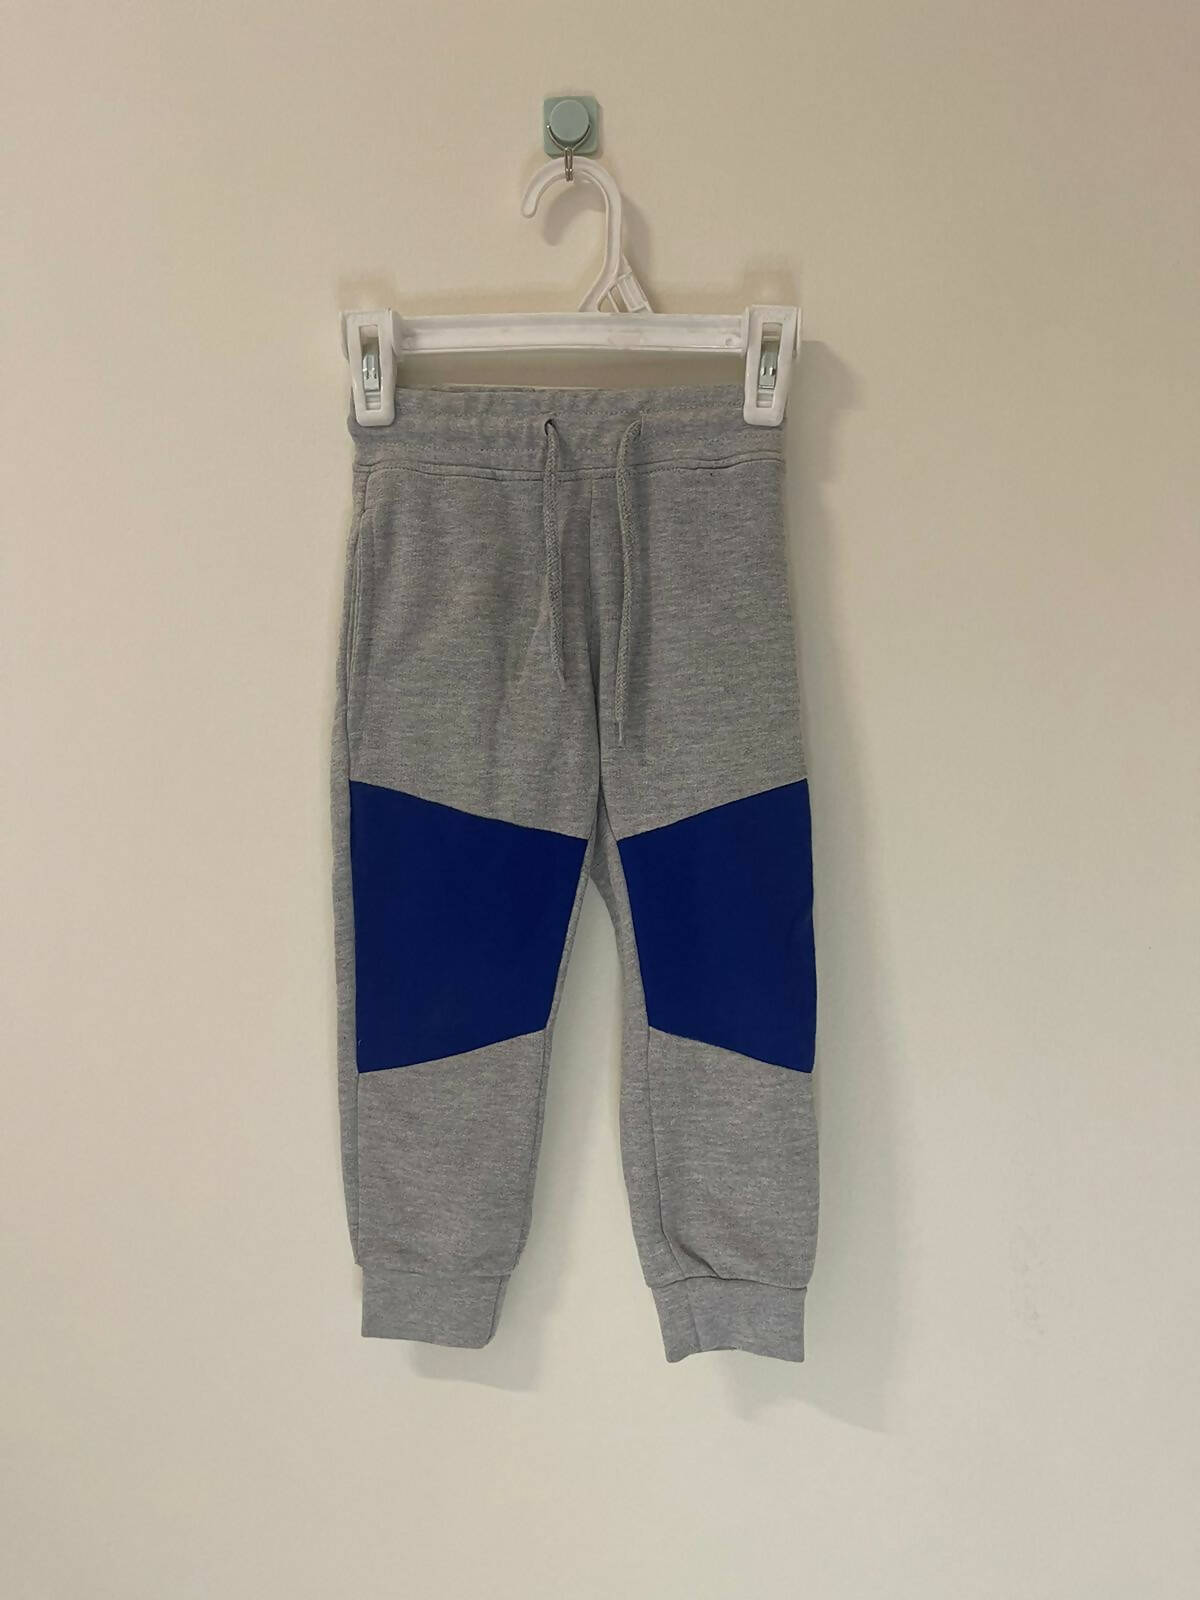 Cirat | Grey Trouser (Size 98) | Boys Bottoms & Pants | Preloved